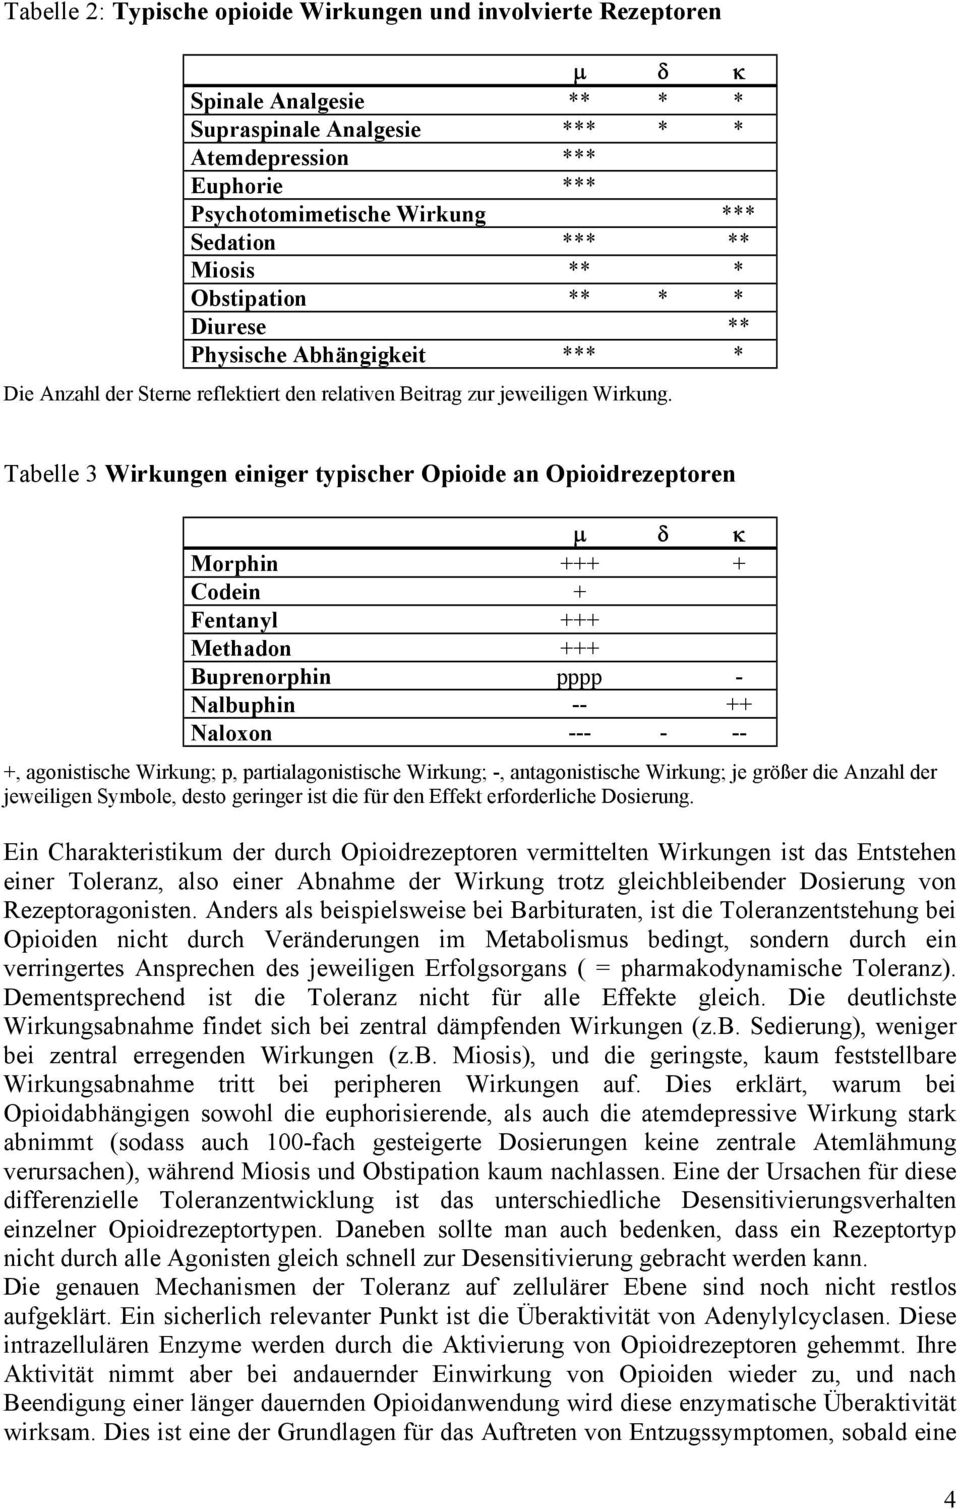 Tabelle 3 Wirkungen einiger typischer Opioide an Opioidrezeptoren µ δ κ Morphin +++ + Codein + Fentanyl +++ Methadon +++ Buprenorphin pppp - Nalbuphin -- ++ Naloxon --- - -- +, agonistische Wirkung;